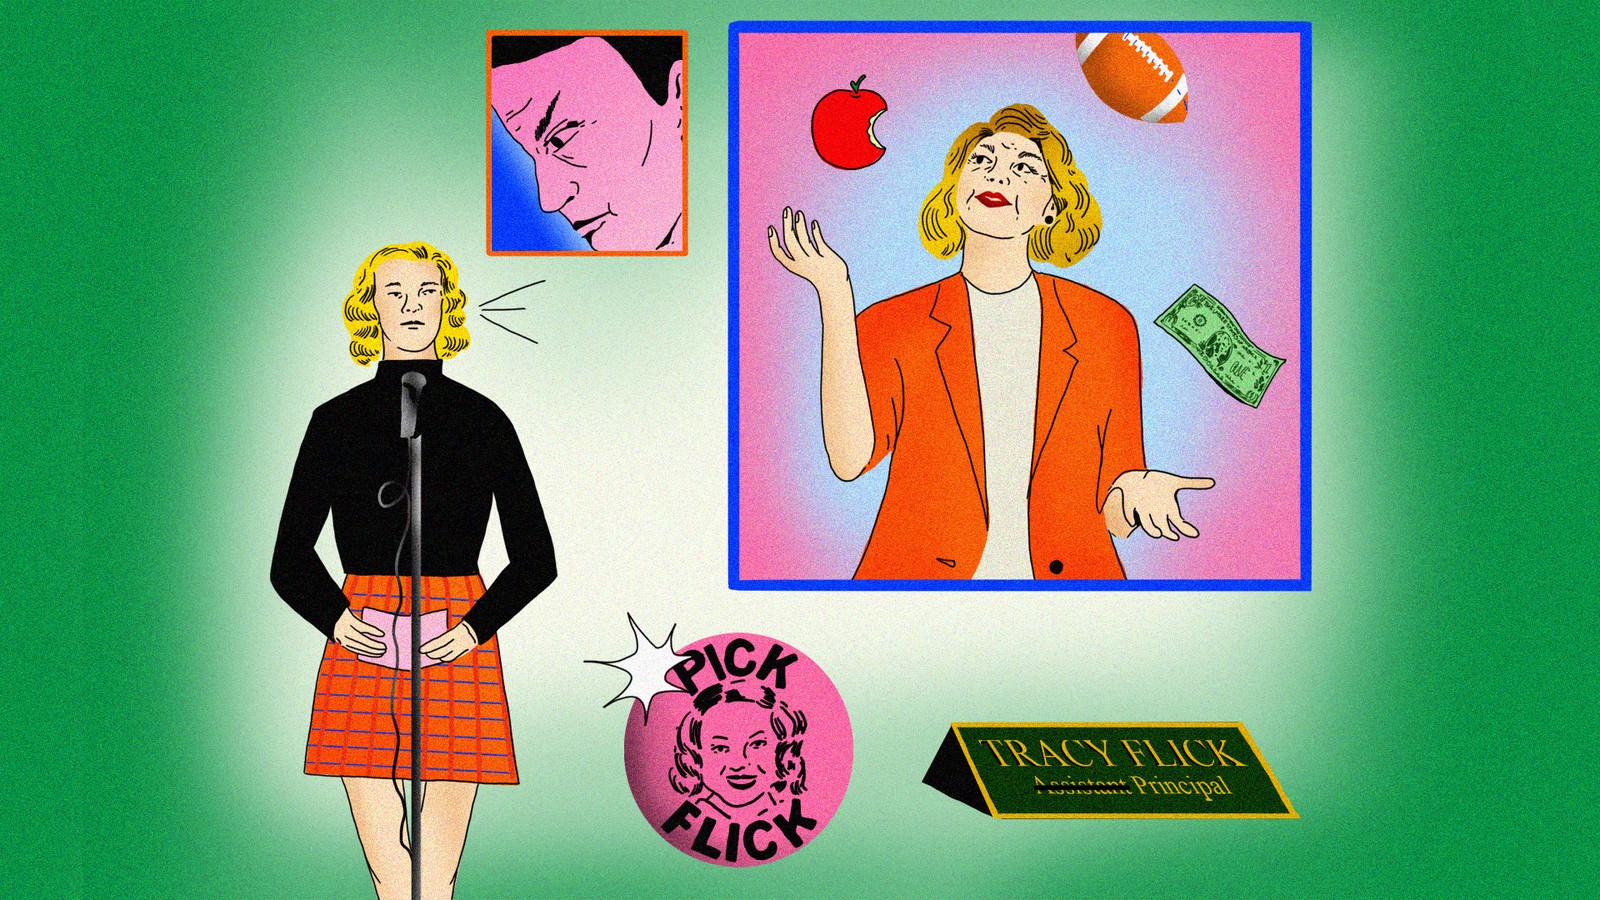 Jim Parsons Sexy - Tracy Flick vs. Toxic Masculinity - The Atlantic